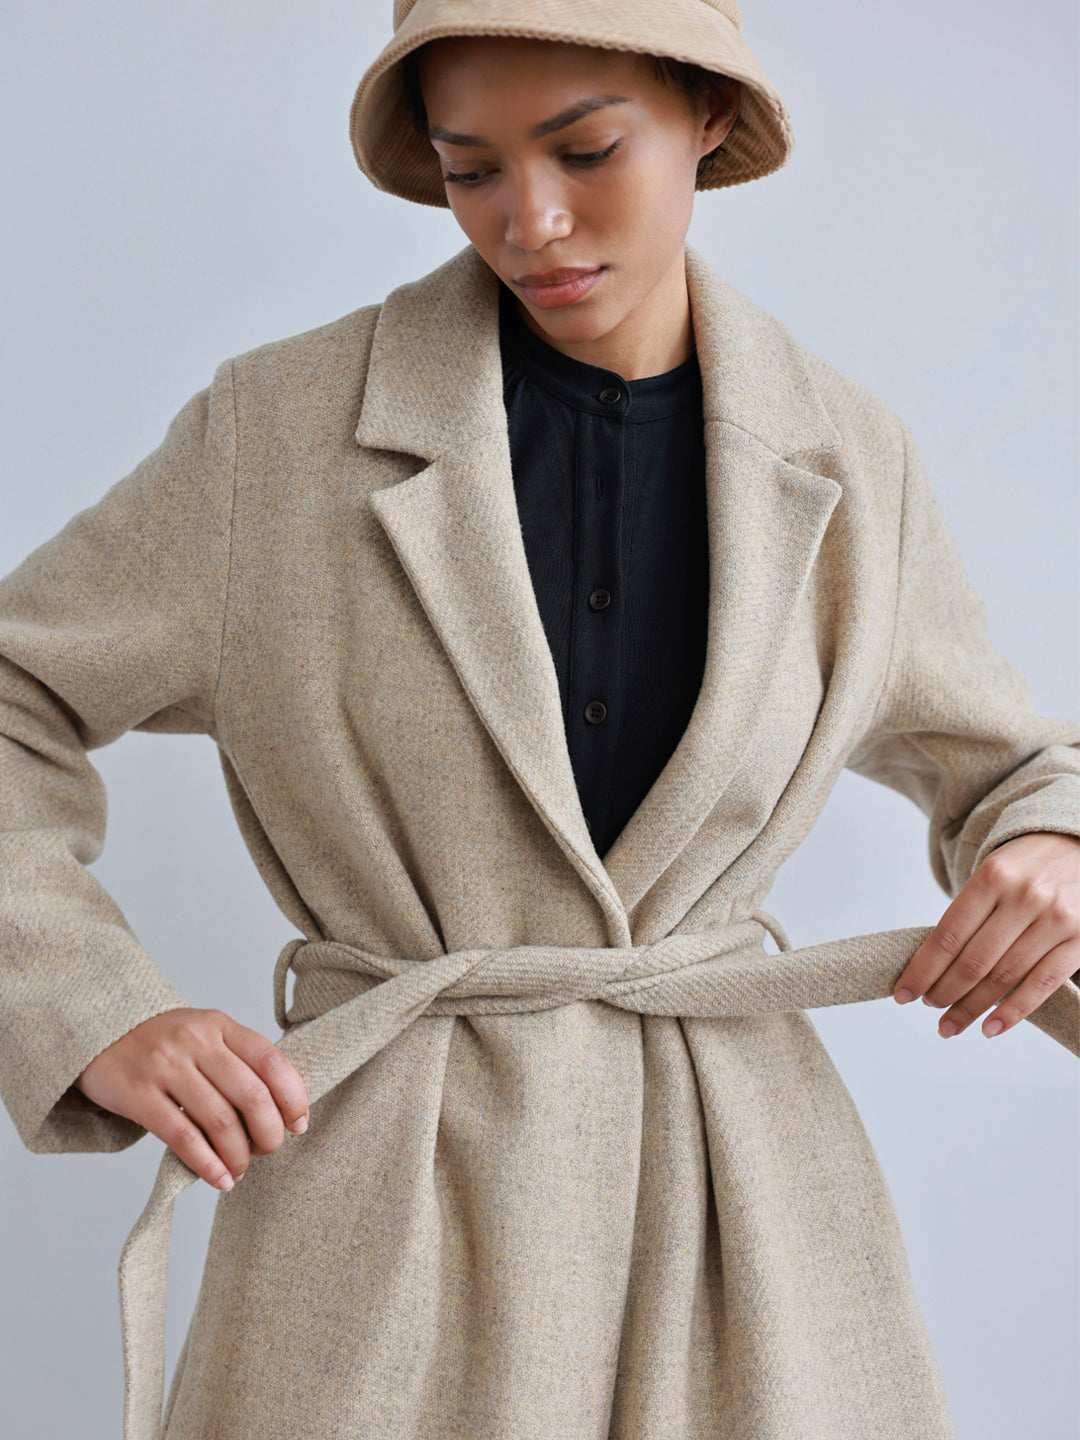 Shetland Wool jacket for women